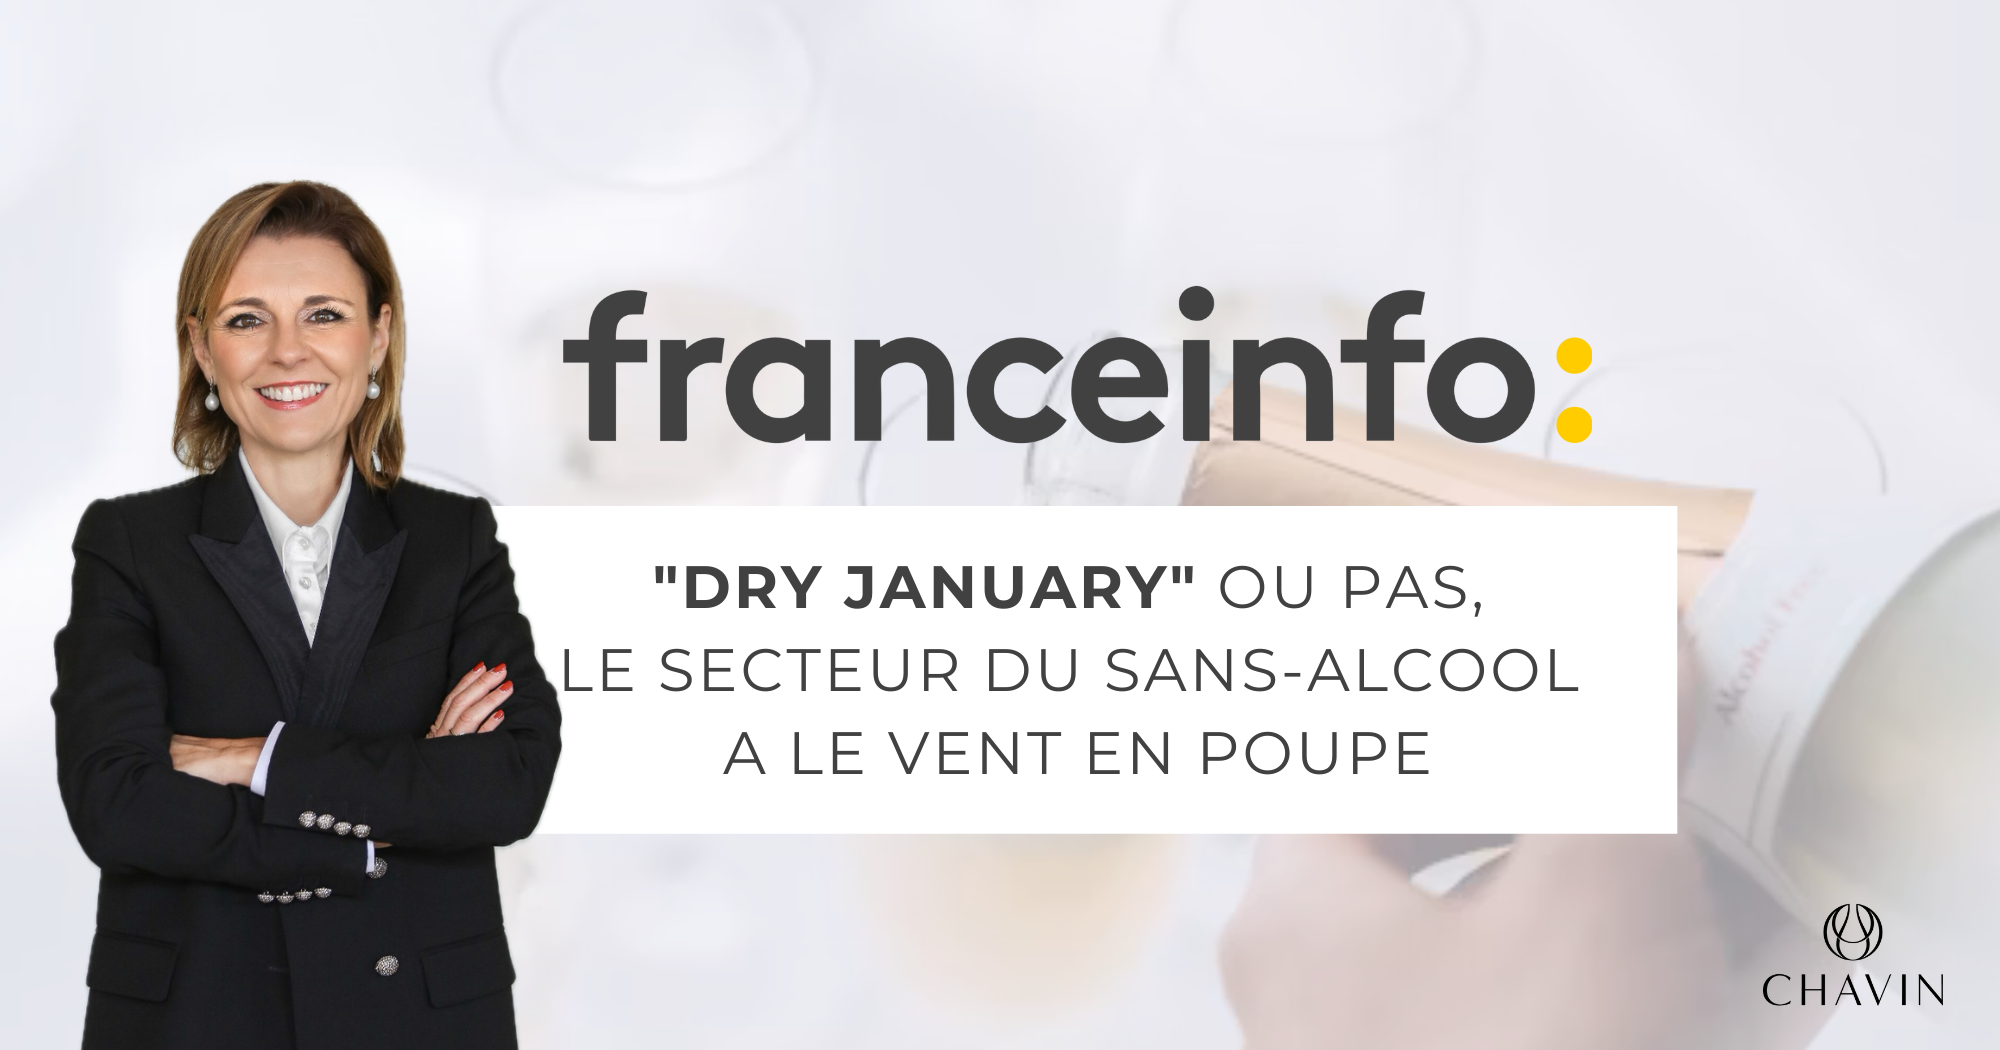 Chavin - Mathilde Boulachin intervient sur franceinfo pour le Dry January